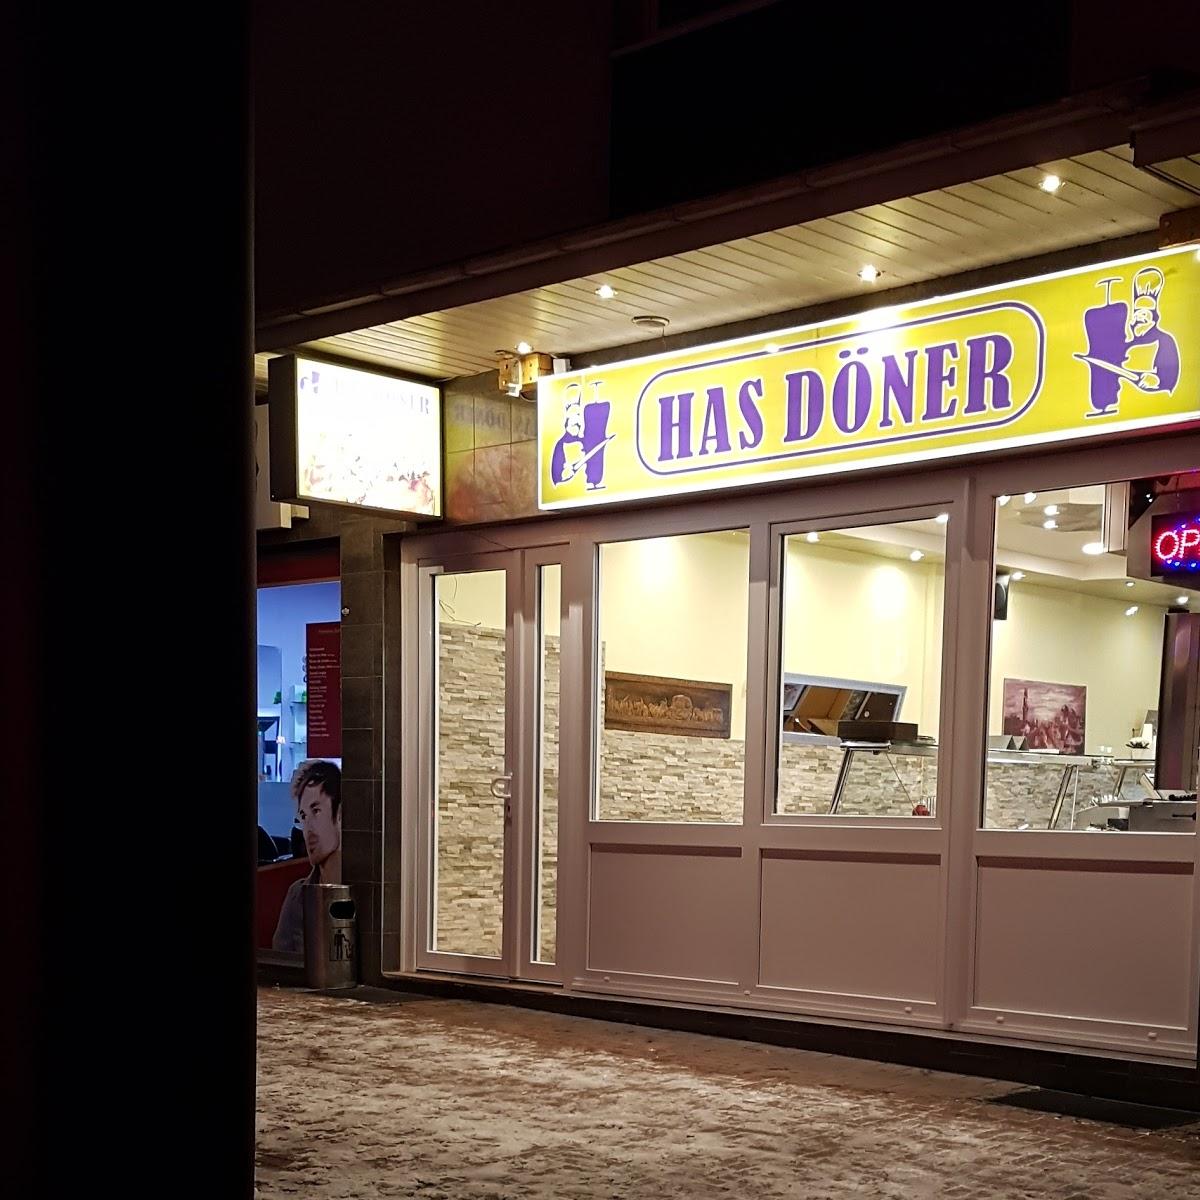 Restaurant "Has Döner" in Leverkusen